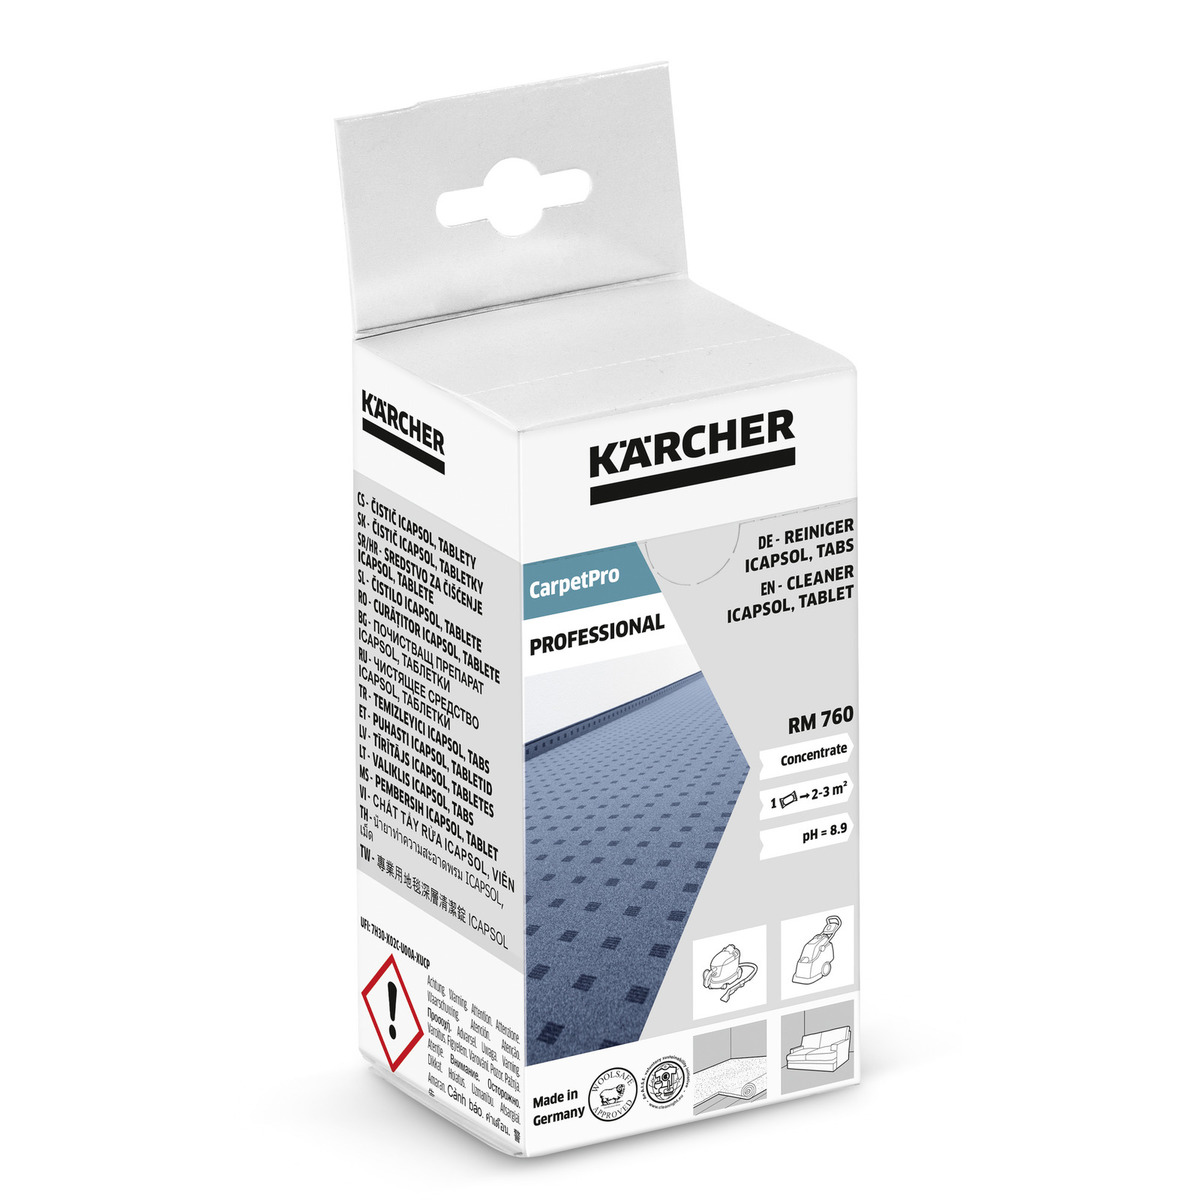 Kärcher CarpetPro Cleaner iCapsol, tablet RM 760